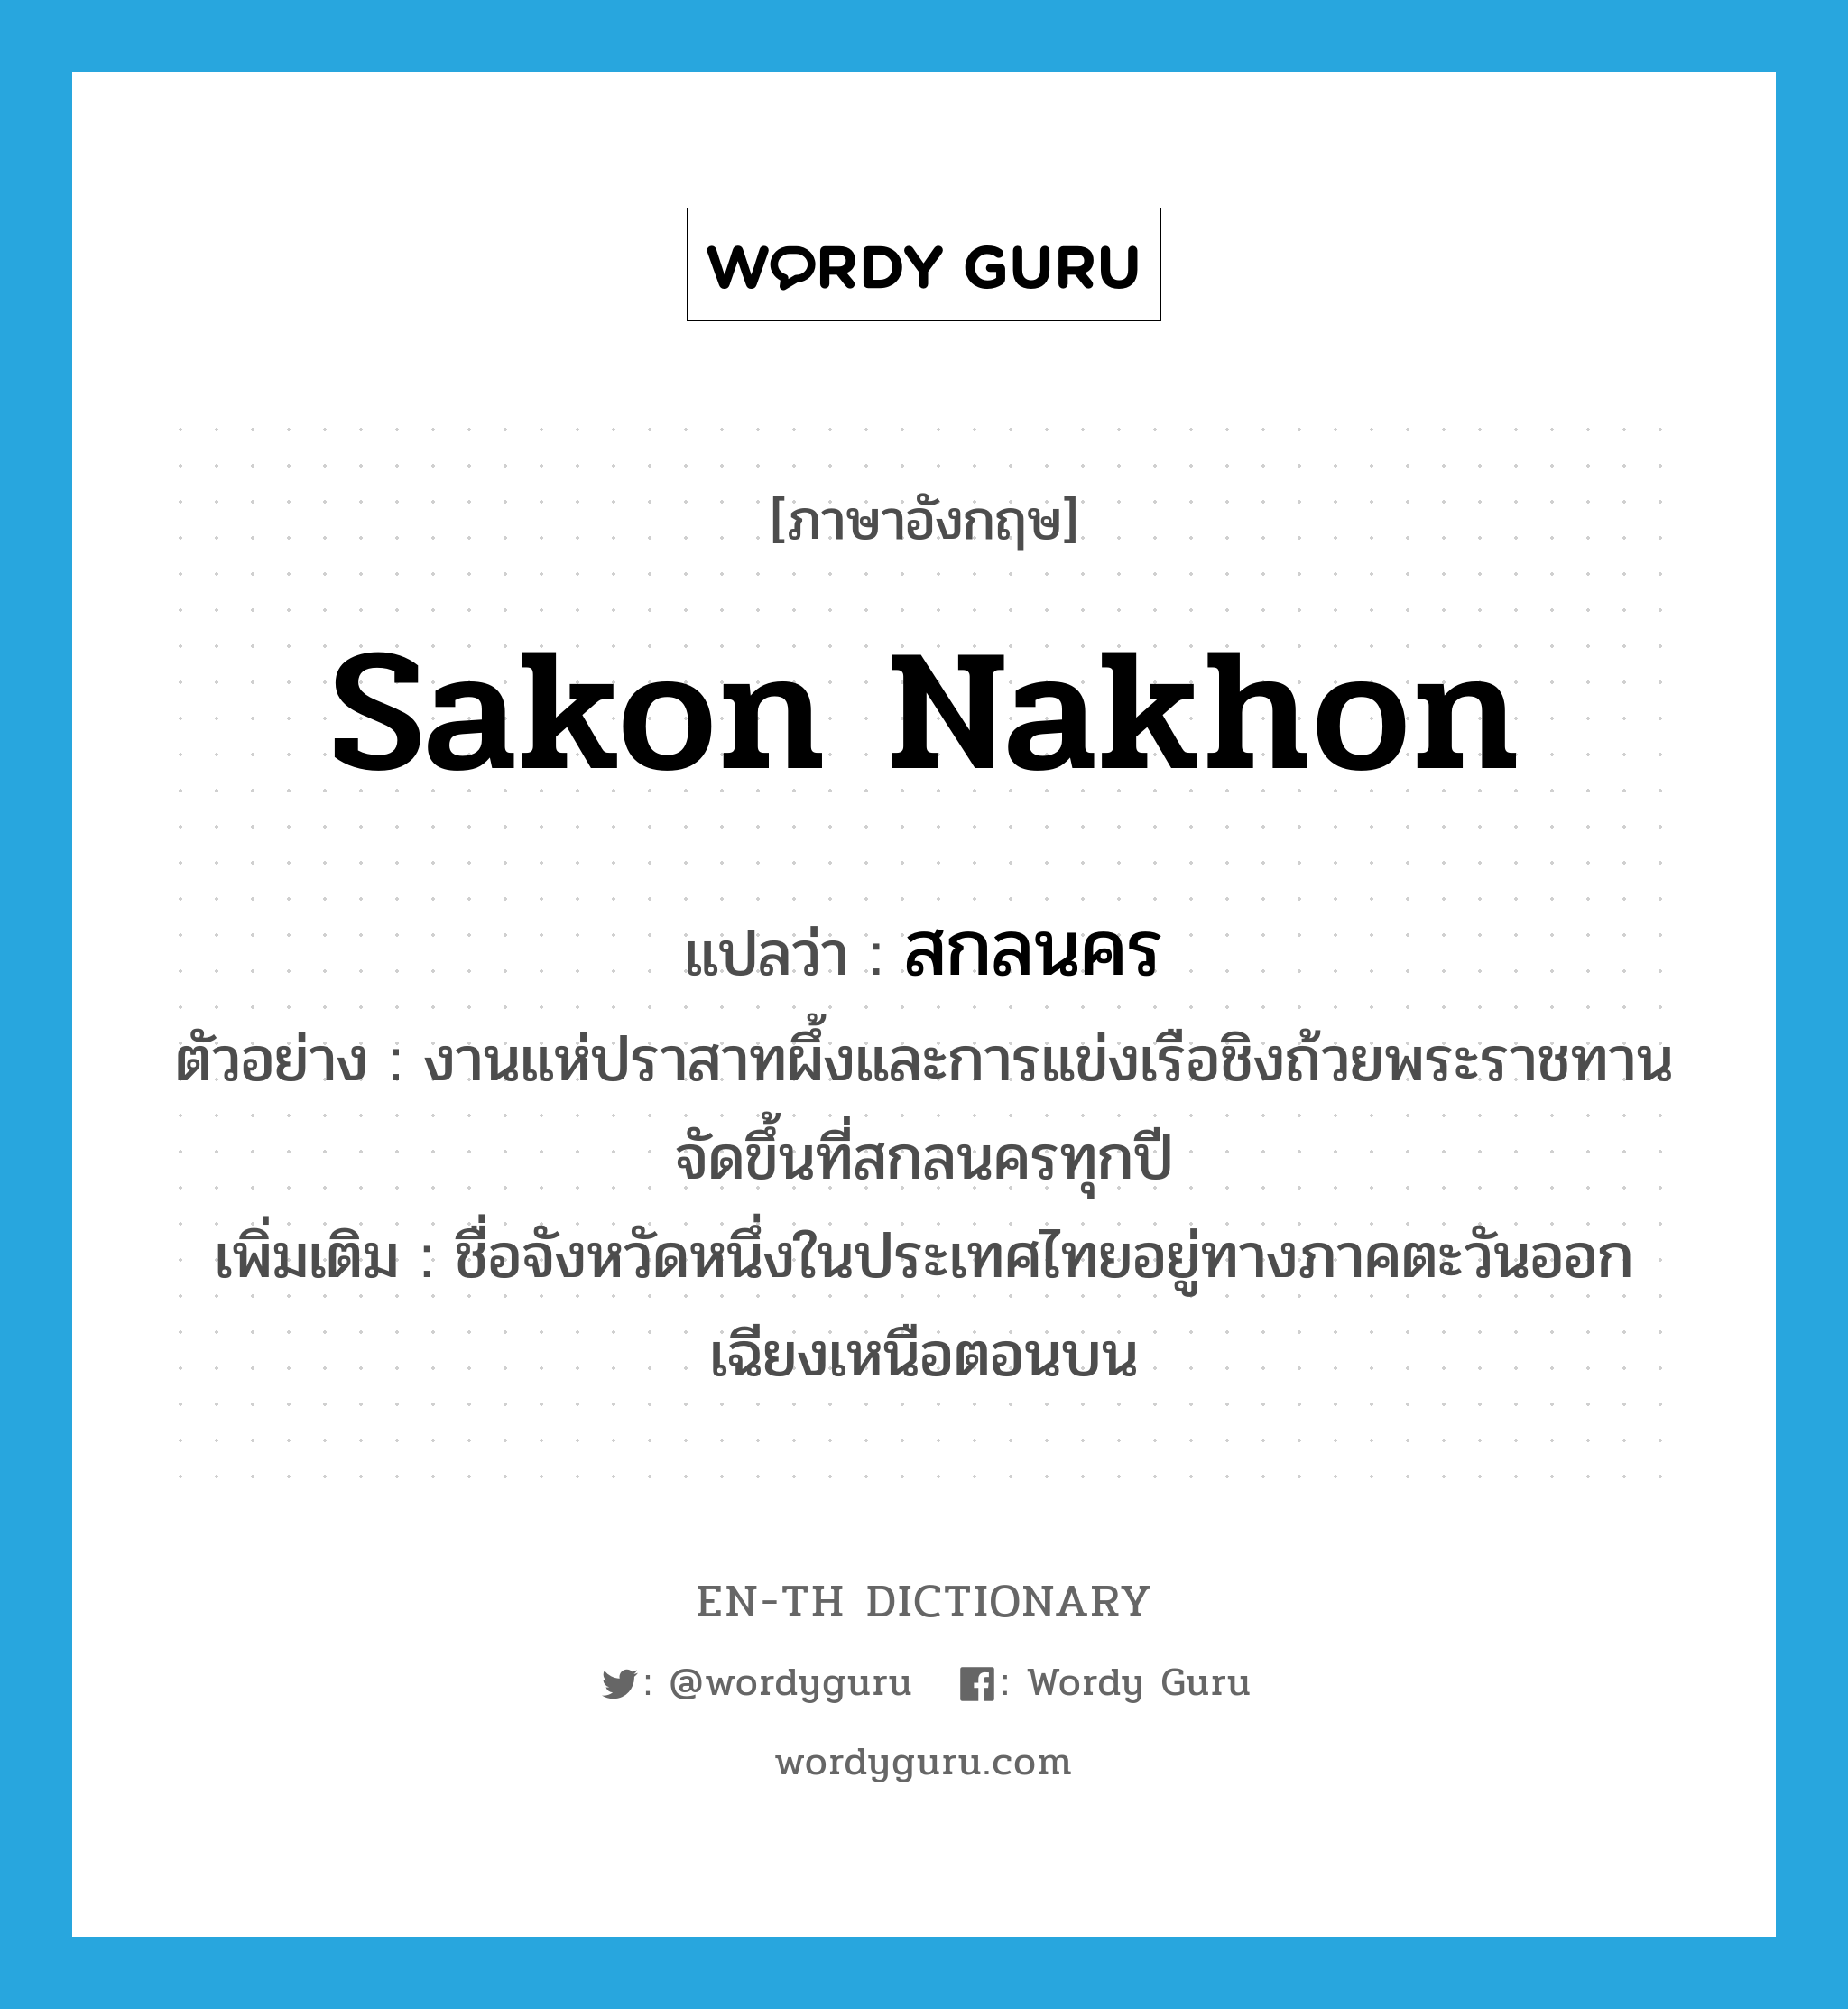 สกลนคร ภาษาอังกฤษ?, คำศัพท์ภาษาอังกฤษ สกลนคร แปลว่า Sakon Nakhon ประเภท N ตัวอย่าง งานแห่ปราสาทผึ้งและการแข่งเรือชิงถ้วยพระราชทานจัดขึ้นที่สกลนครทุกปี เพิ่มเติม ชื่อจังหวัดหนึ่งในประเทศไทยอยู่ทางภาคตะวันออกเฉียงเหนือตอนบน หมวด N